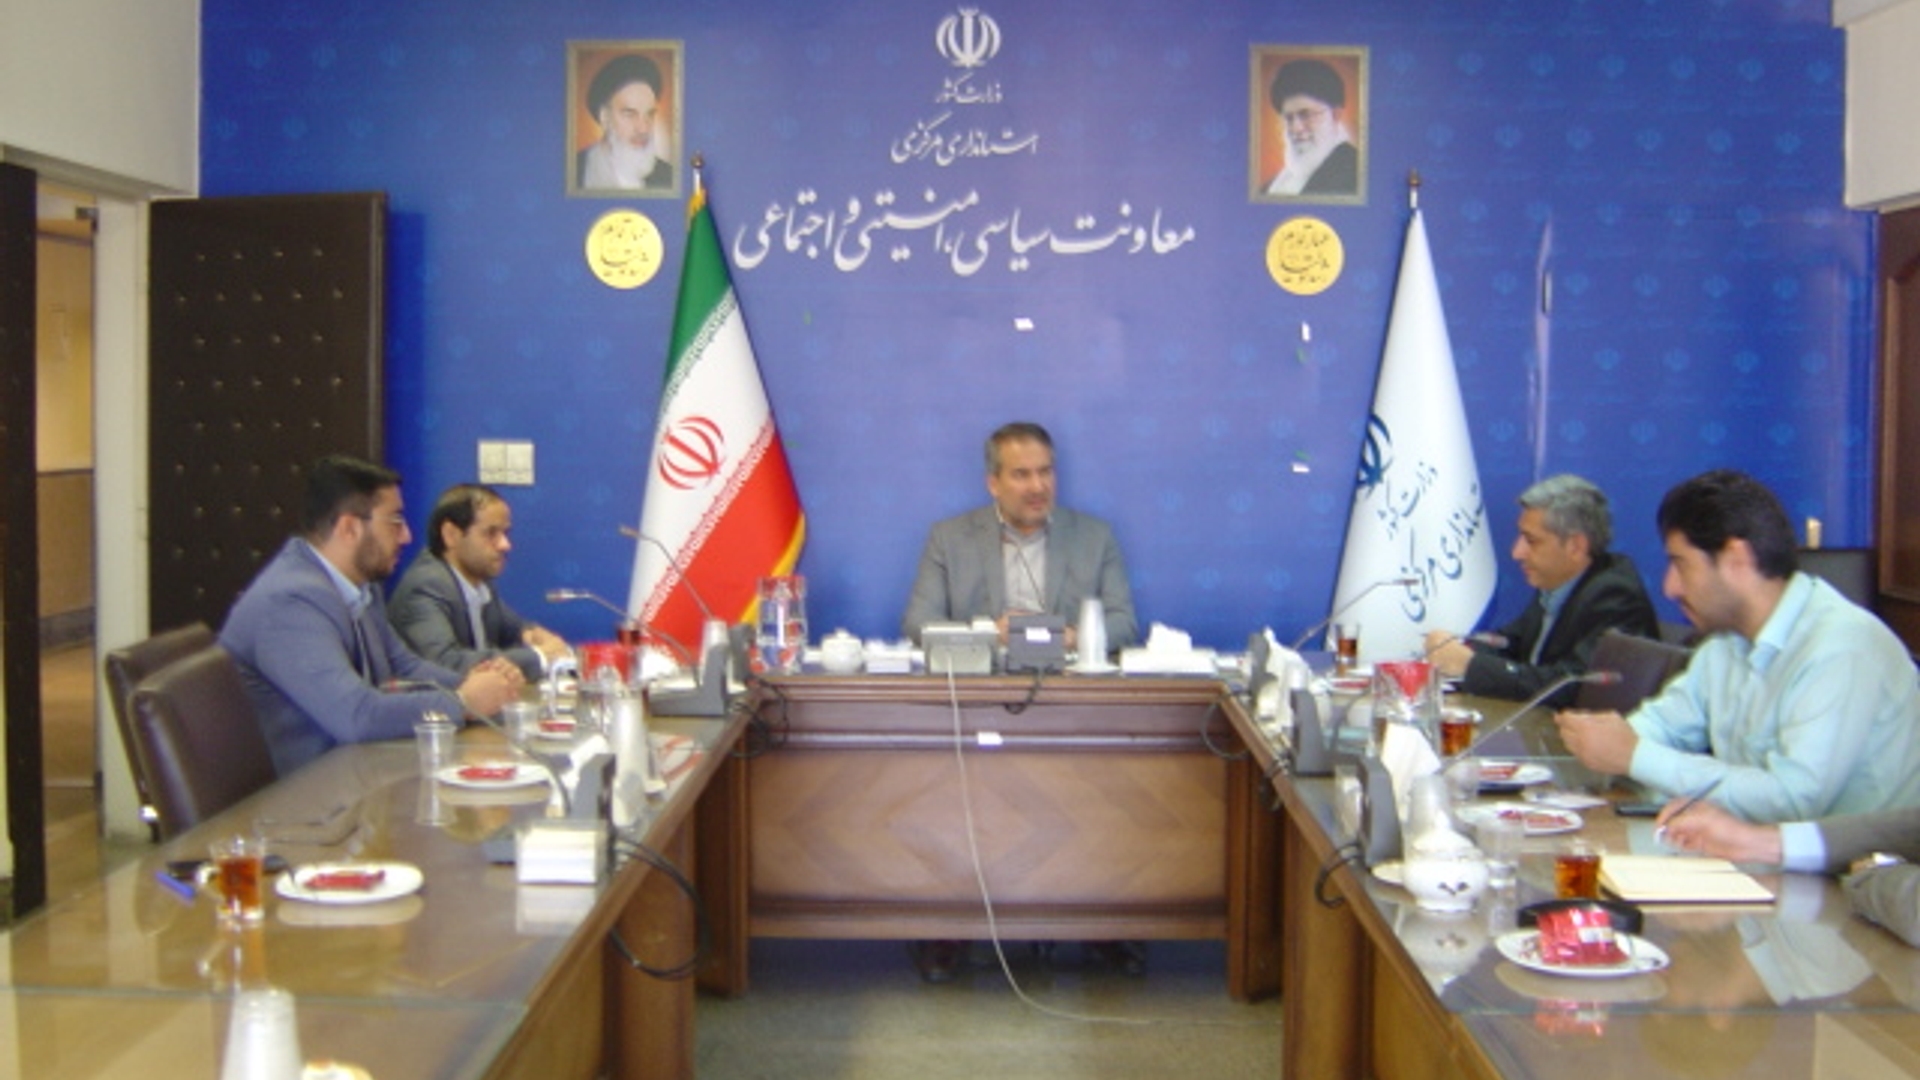 جلسه کمیته تخصصی نظارت بر تخلفات اینترنتی استان راس ساعت 8 صبح روز پنج شنبه مورخ 17-8-1402 به ریاست آقای رحیمی تبار مدیر کل امنیتی و انتظامی برگزار گردید.